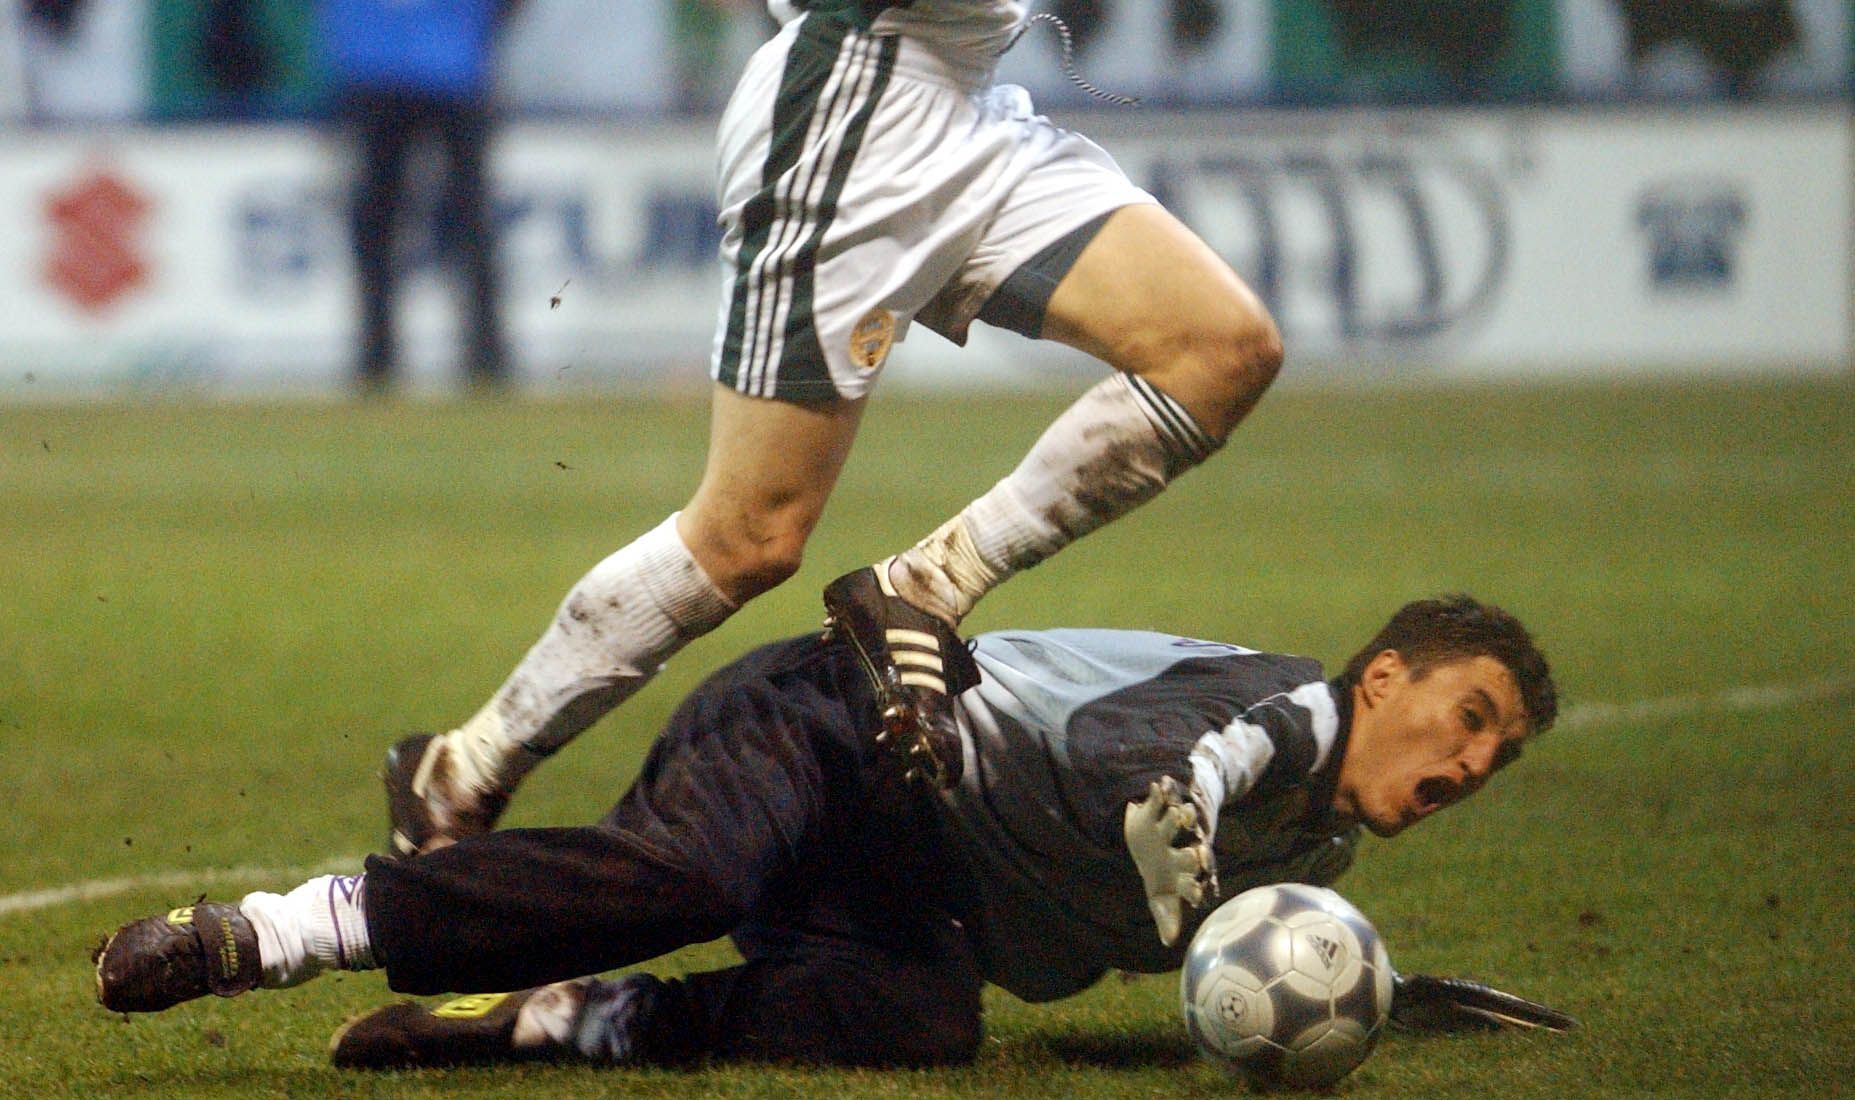 A képen: az újpesti kapus Posza Zsolt elhúzza a ferencvárosi csatár, Gera Zoltán lábát, amiért a játékvezető tizenegyest adott a 2002-es Ferencváros-Újpest mérkőzésen.
MTI Fotó: Földi Imre